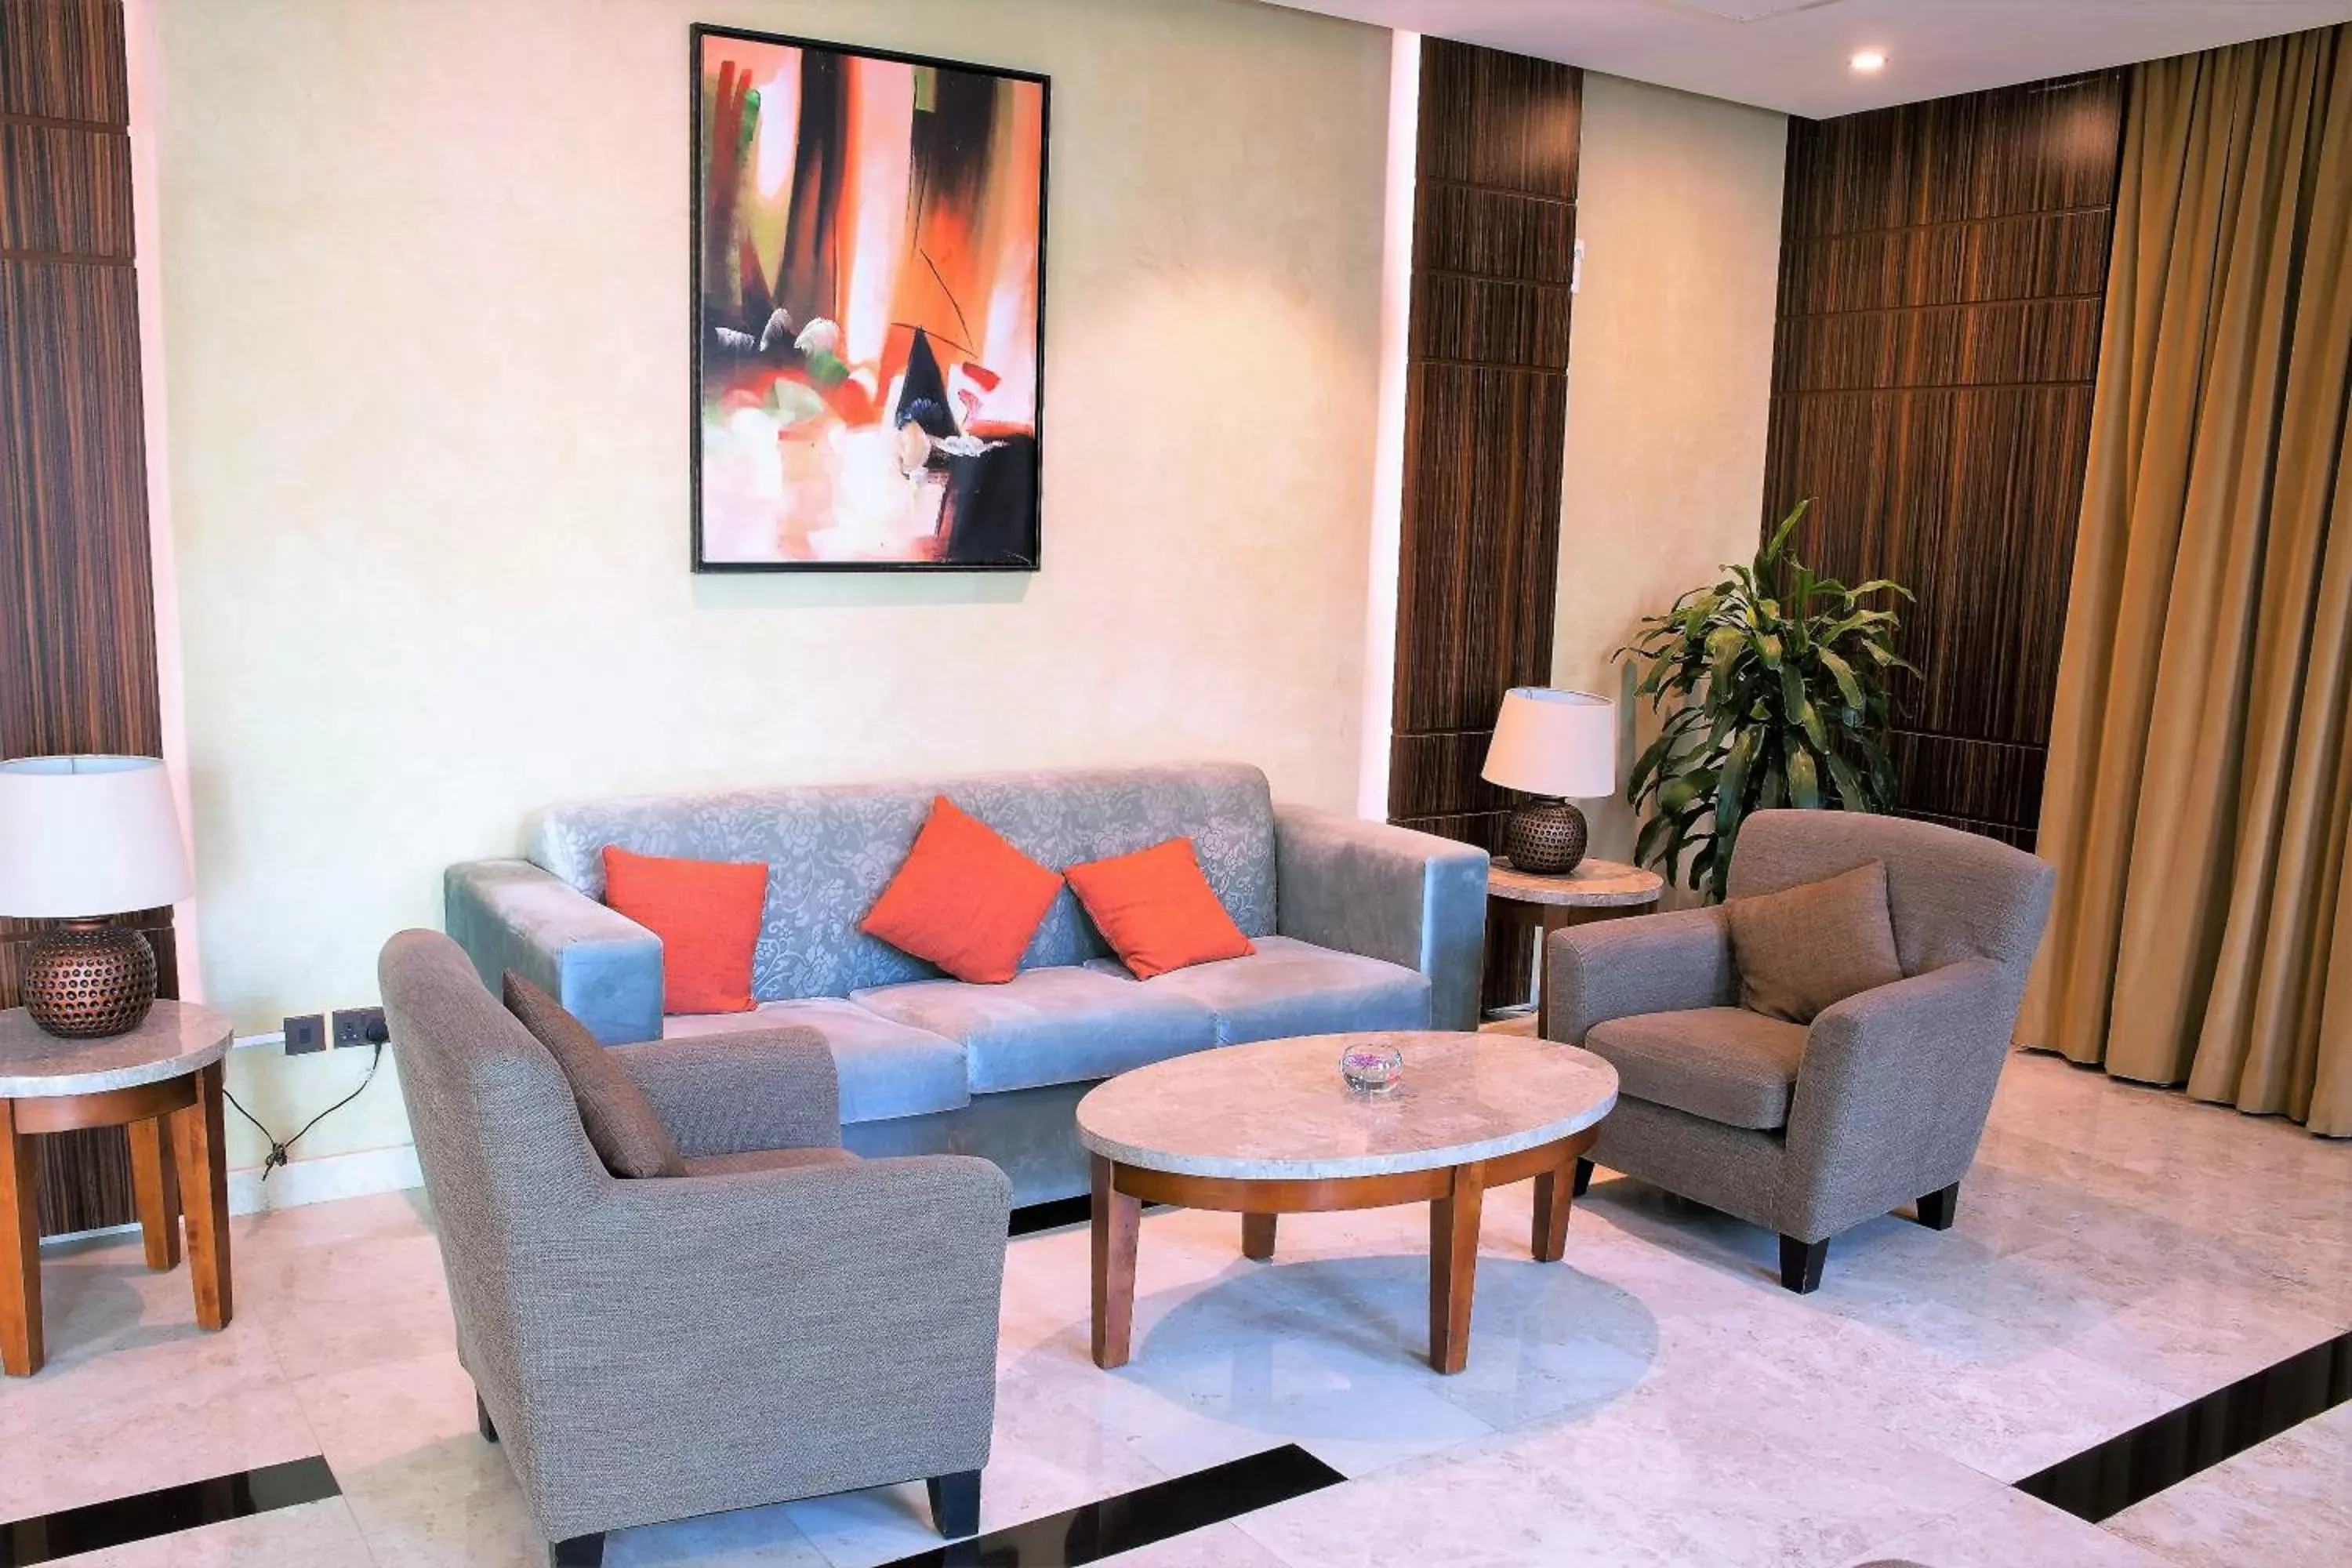 Lobby or reception, Seating Area in Best Western Plus Salmiya